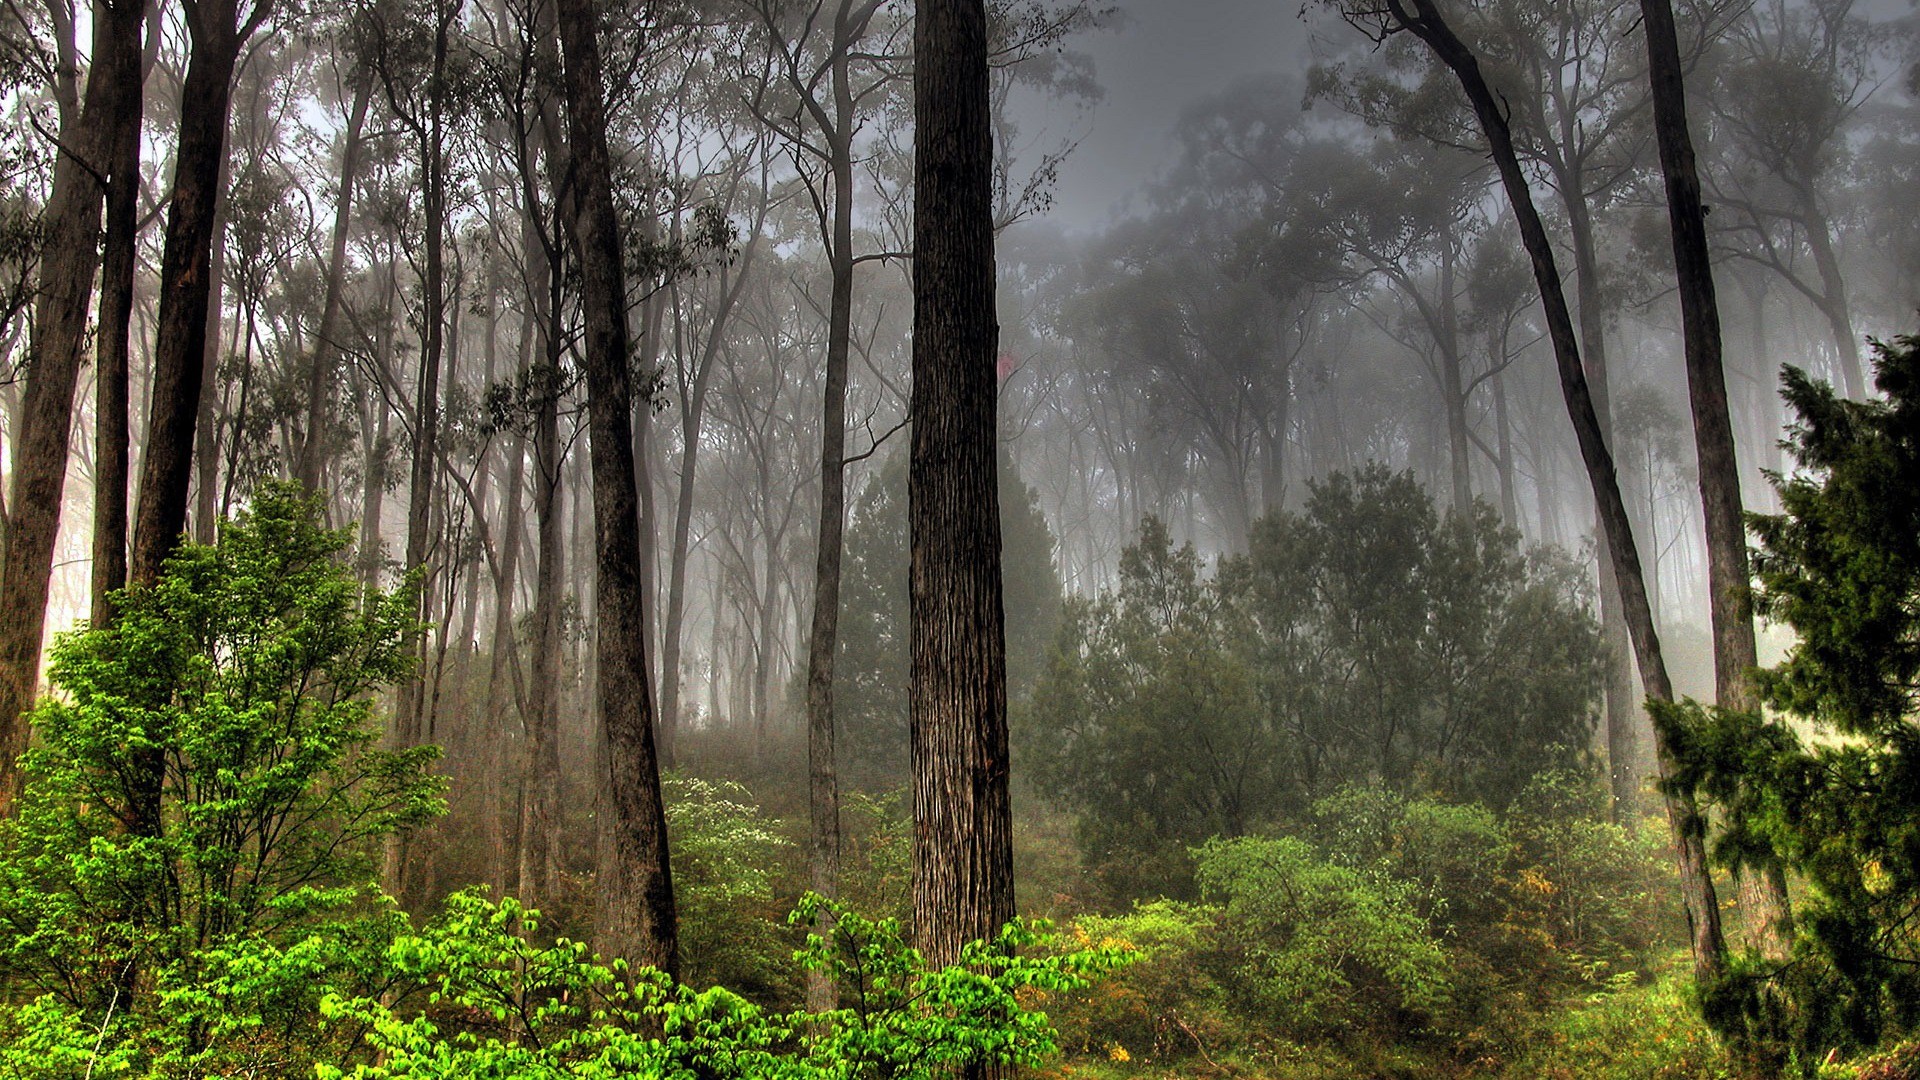 trees, forests, fog - desktop wallpaper